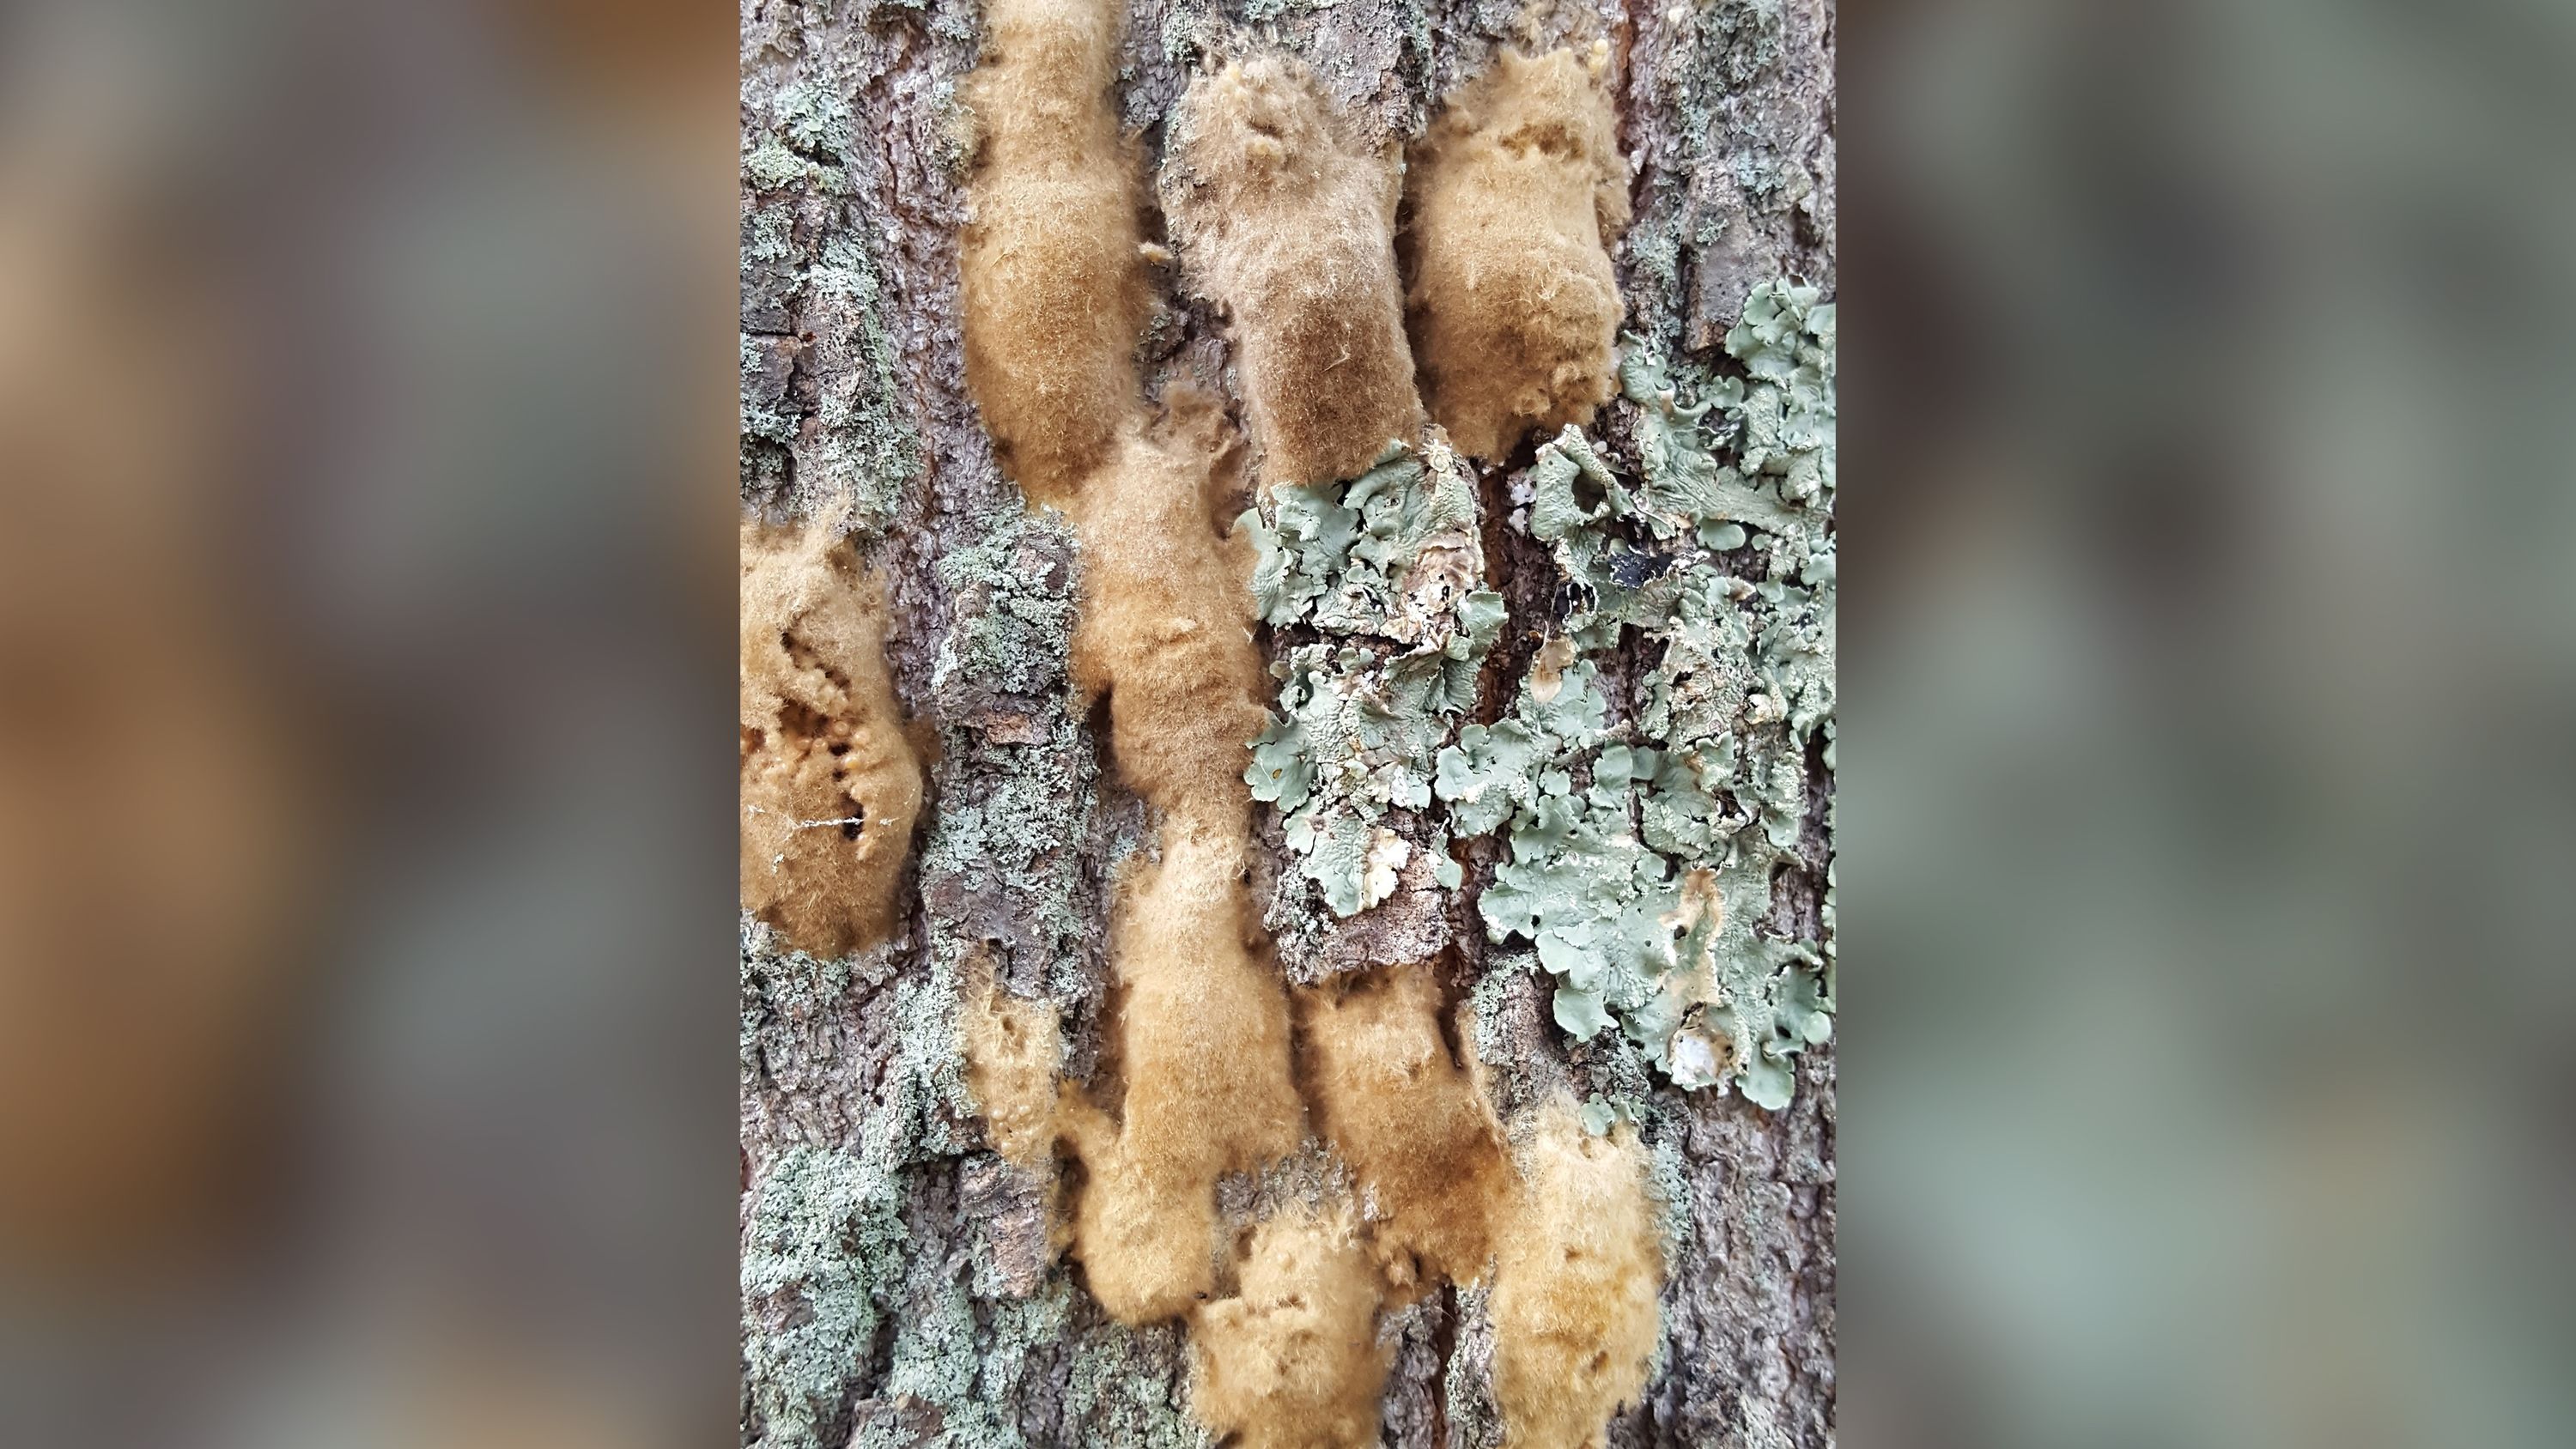 Spongy moth egg masses cluster on tree bark. 